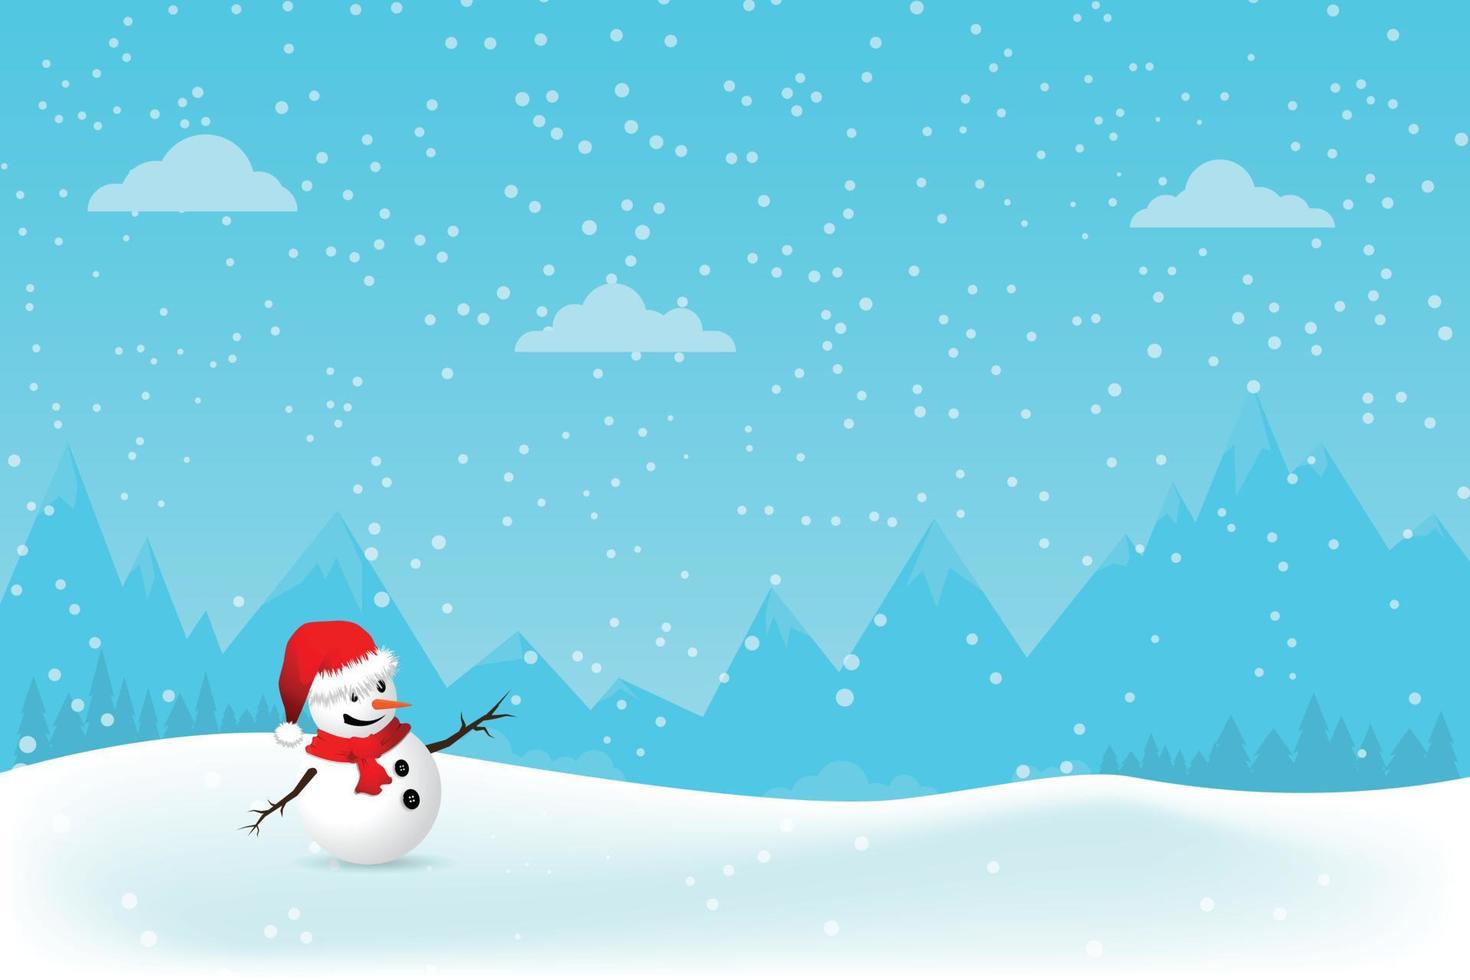 kerst wenskaart met sneeuwpop.-vector illustratie. vector